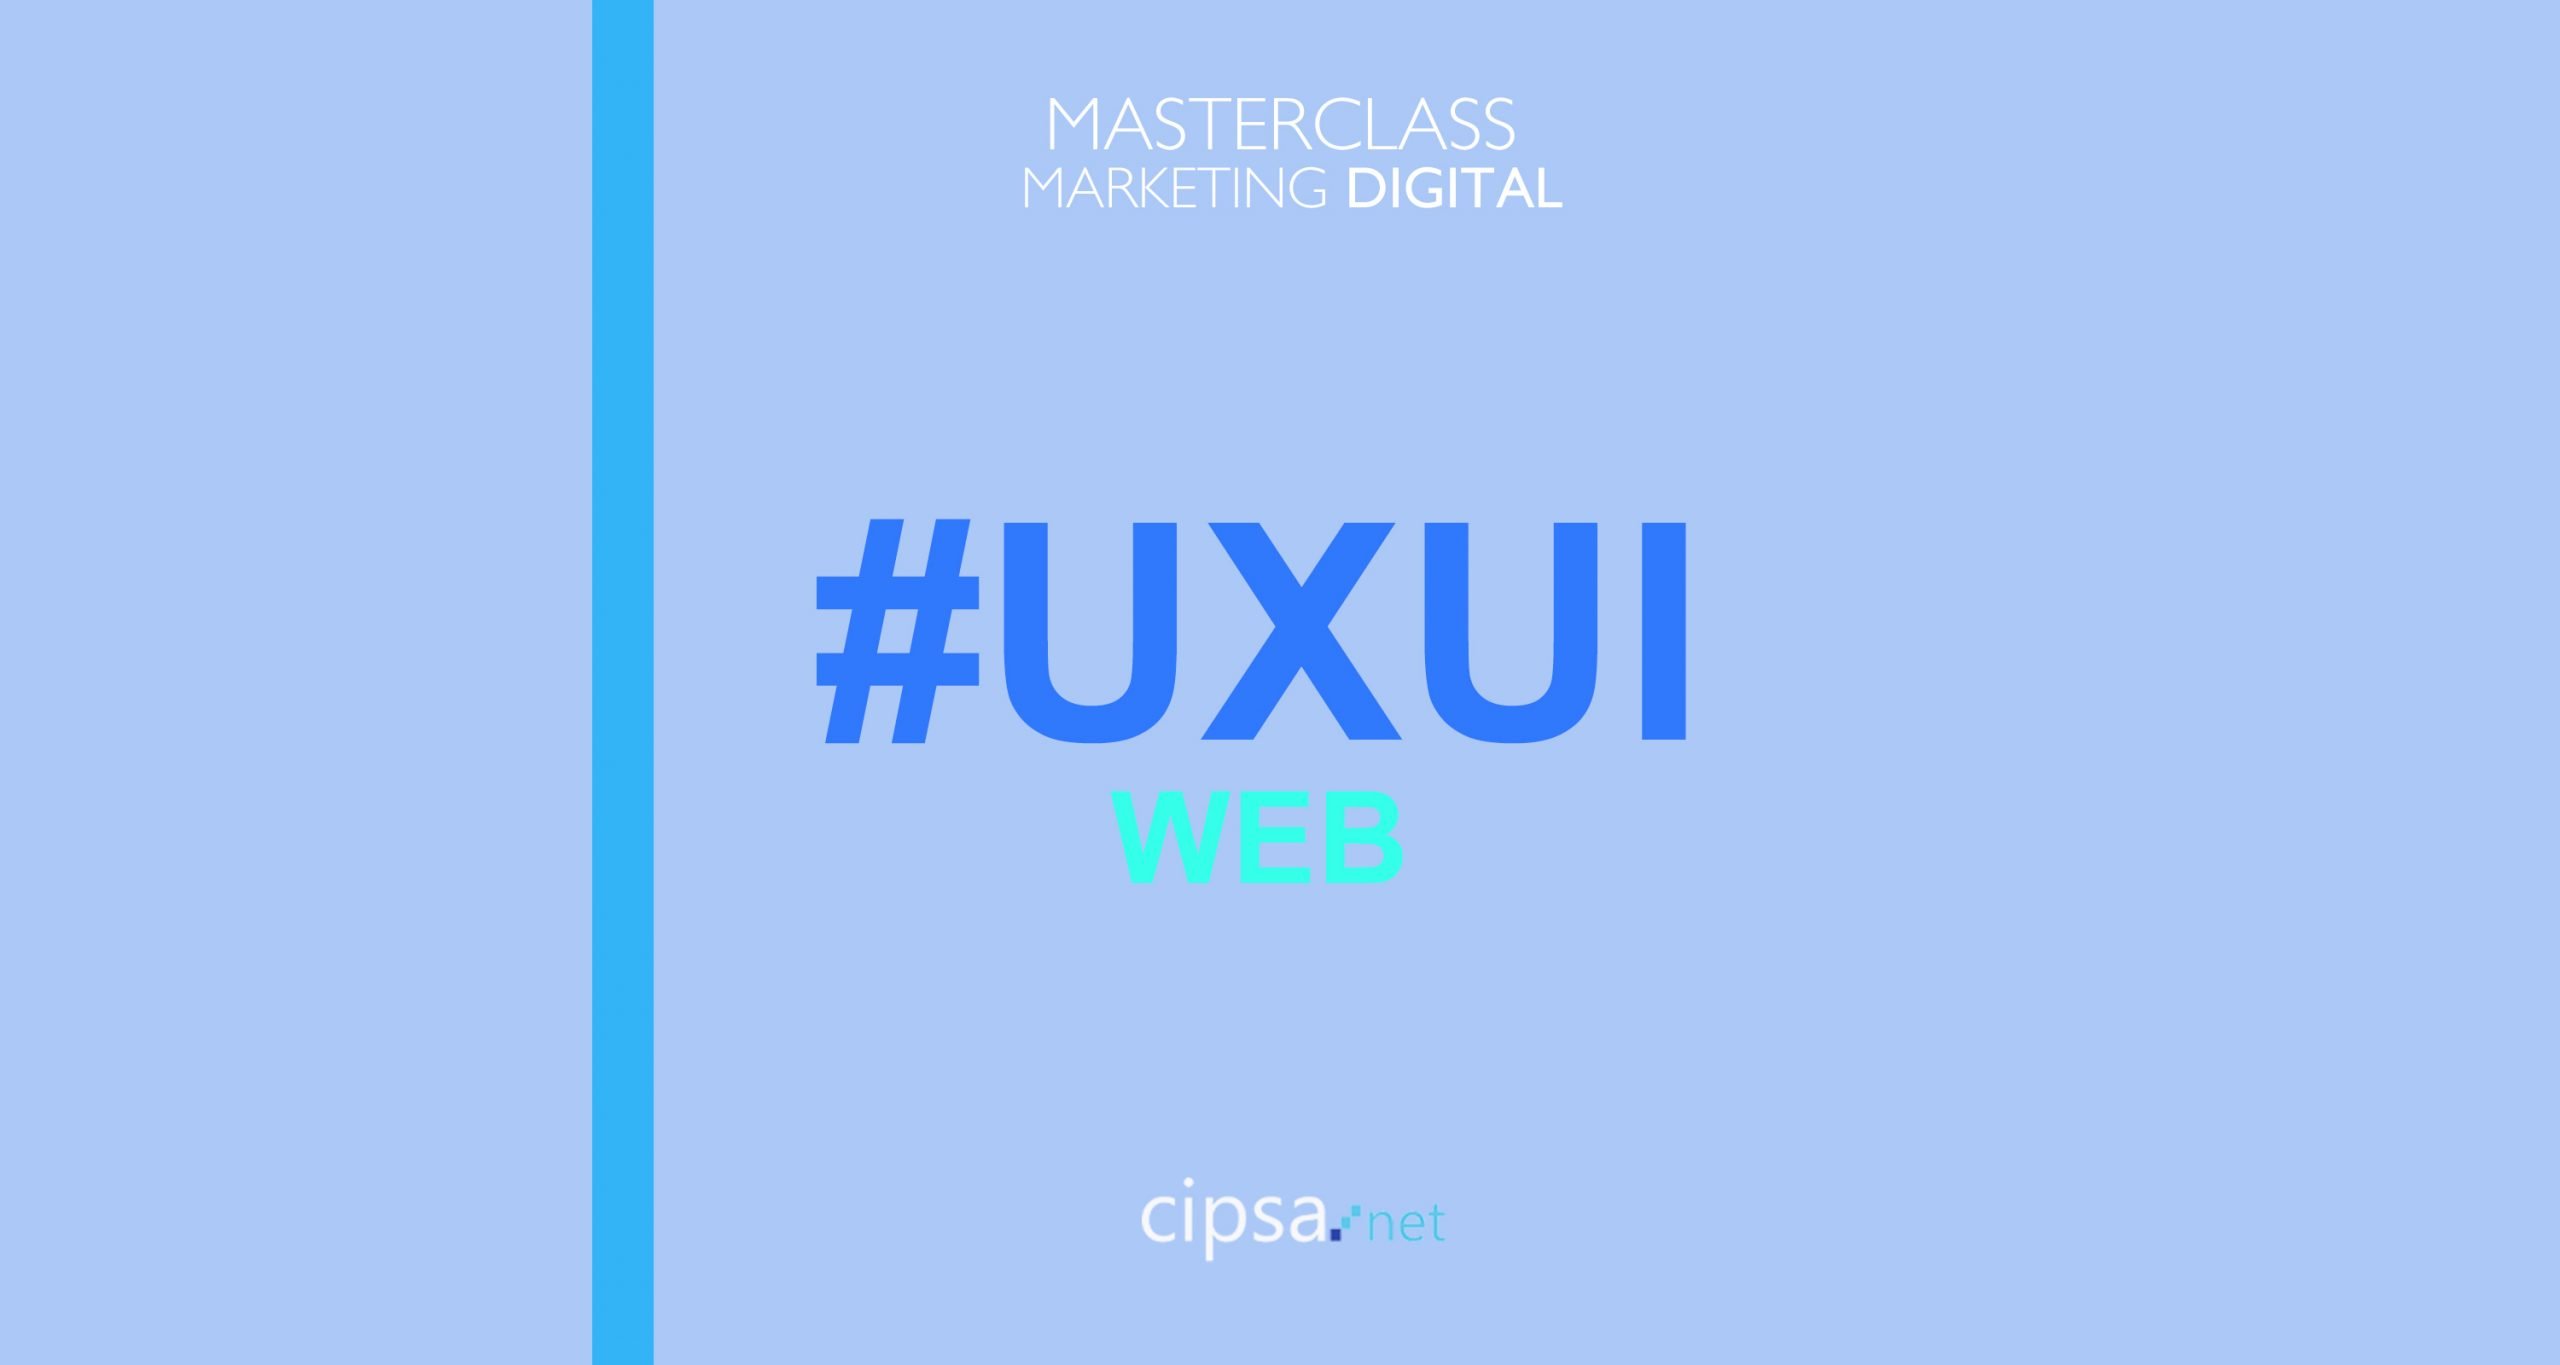 Claves, tips y tendencias UX UI WEB